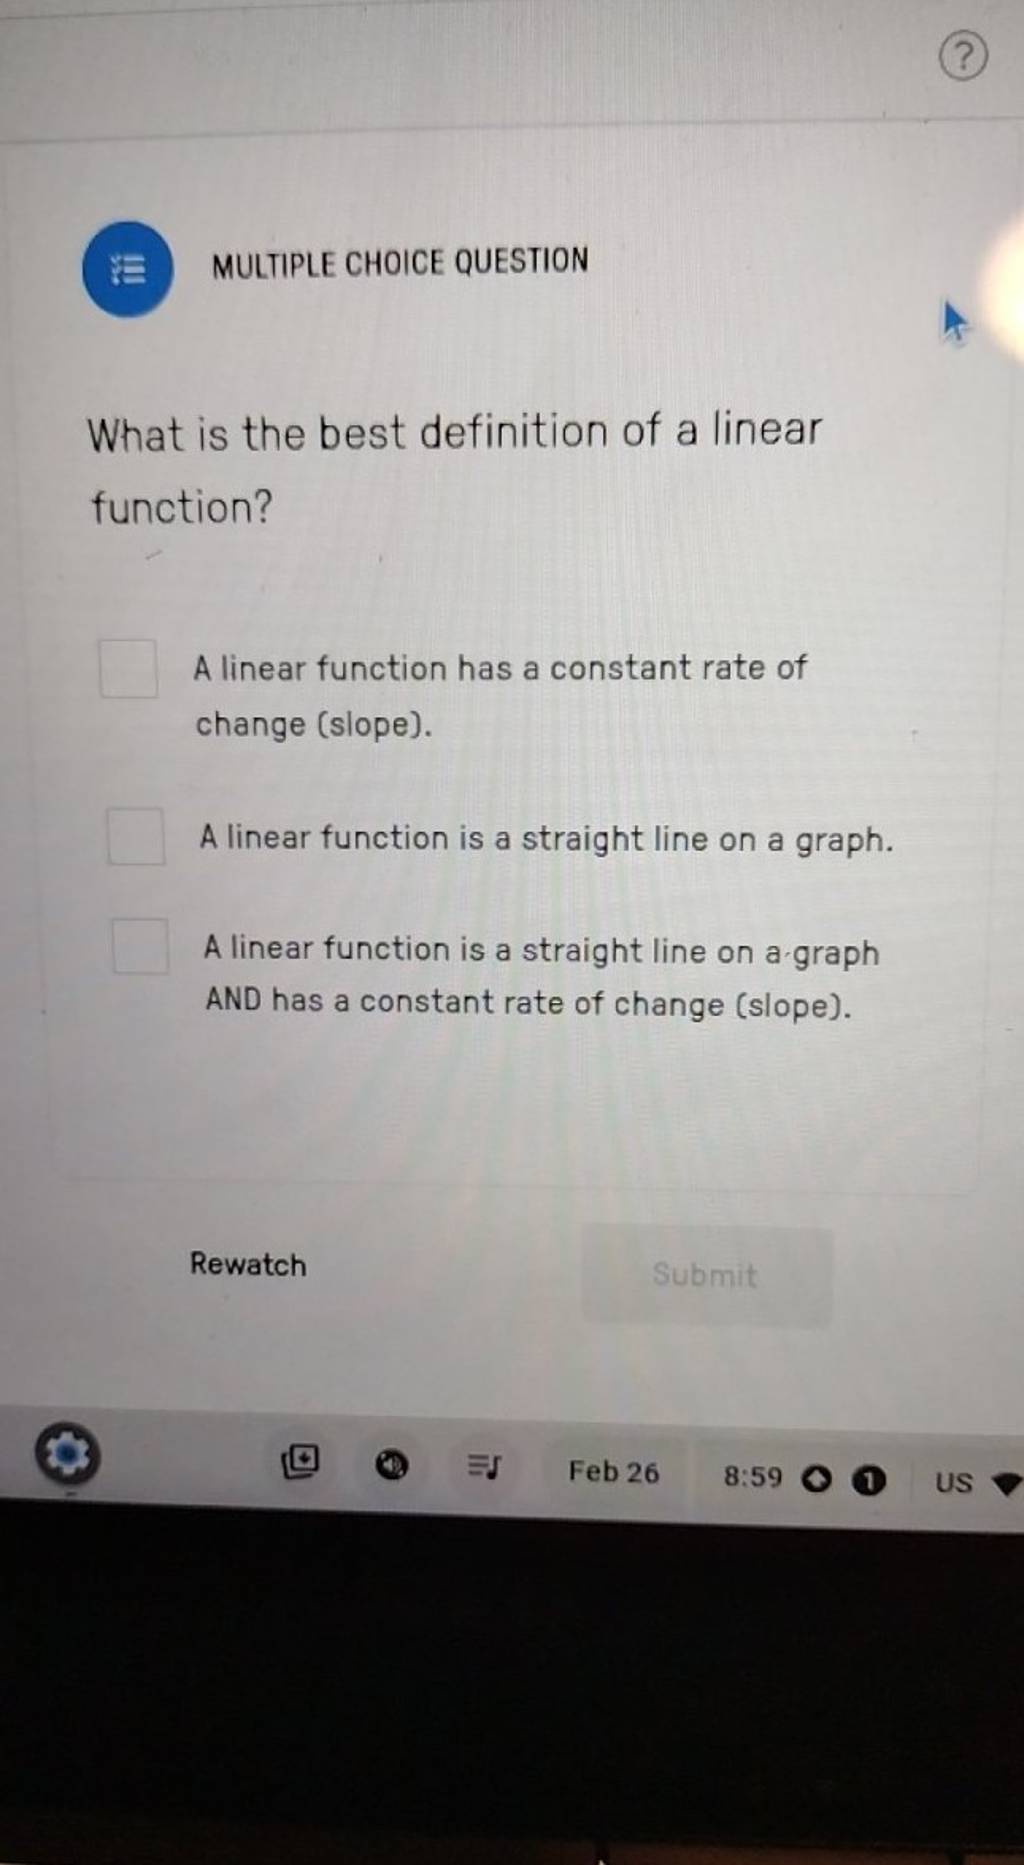 ミE MULTIPLE CHOICE QUESTION
What is the best definition of a linear fu